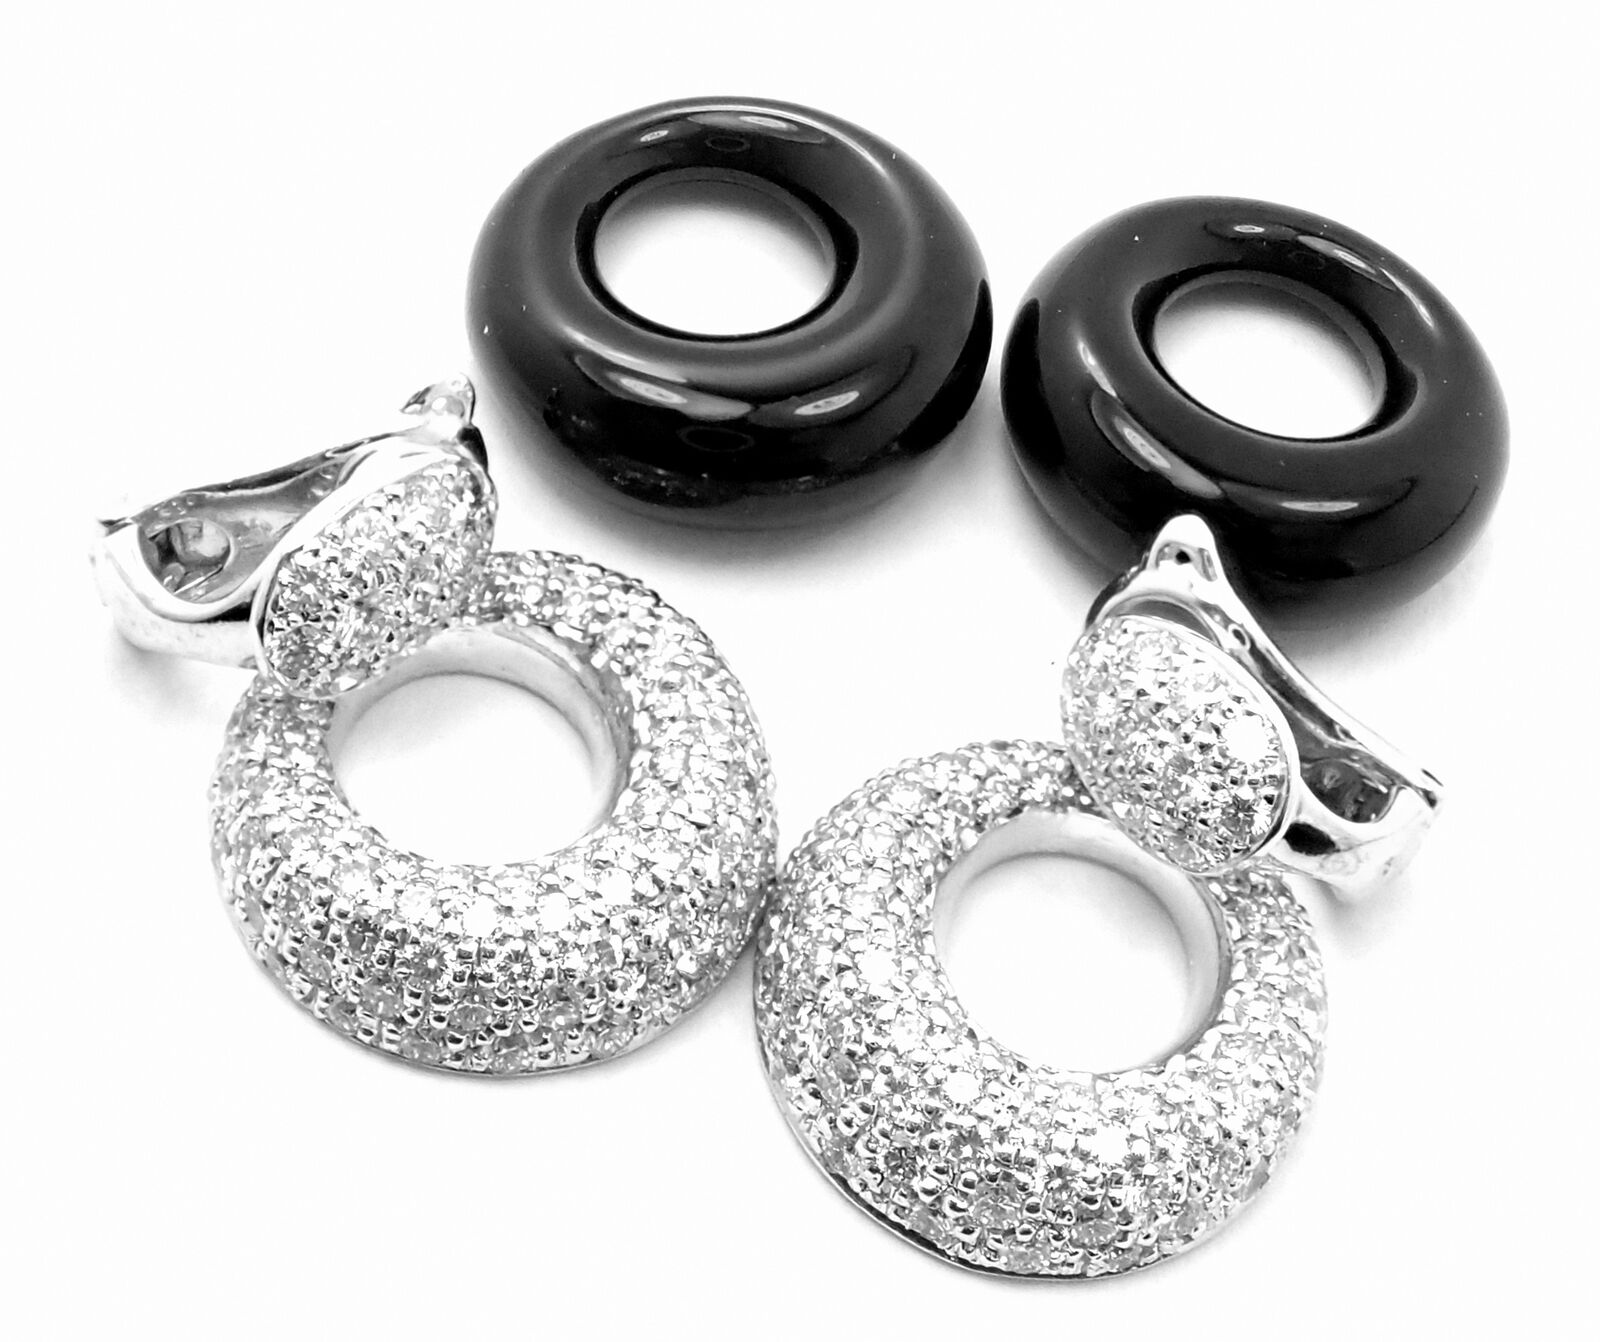 Van Cleef & Arpels Jewelry & Watches:Fine Jewelry:Earrings Rare! Van Cleef & Arpels 18k White Gold Diamond Onyx Door Knocker Earrings Paper